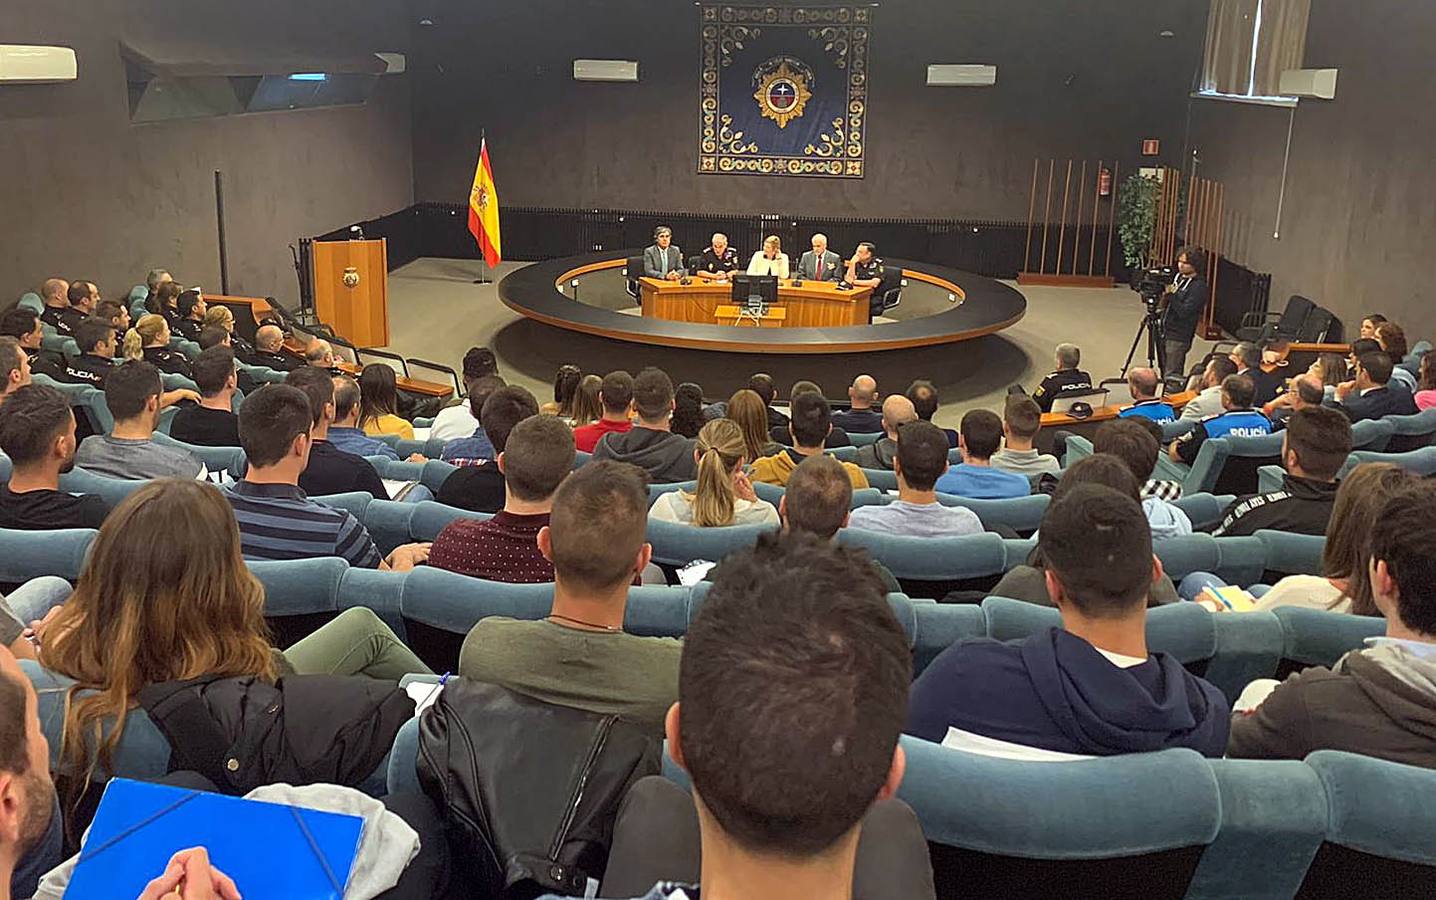 Sesenta futuros agentes inician en Ávila el Curso Básico de Formación extraordinario para policías locales.